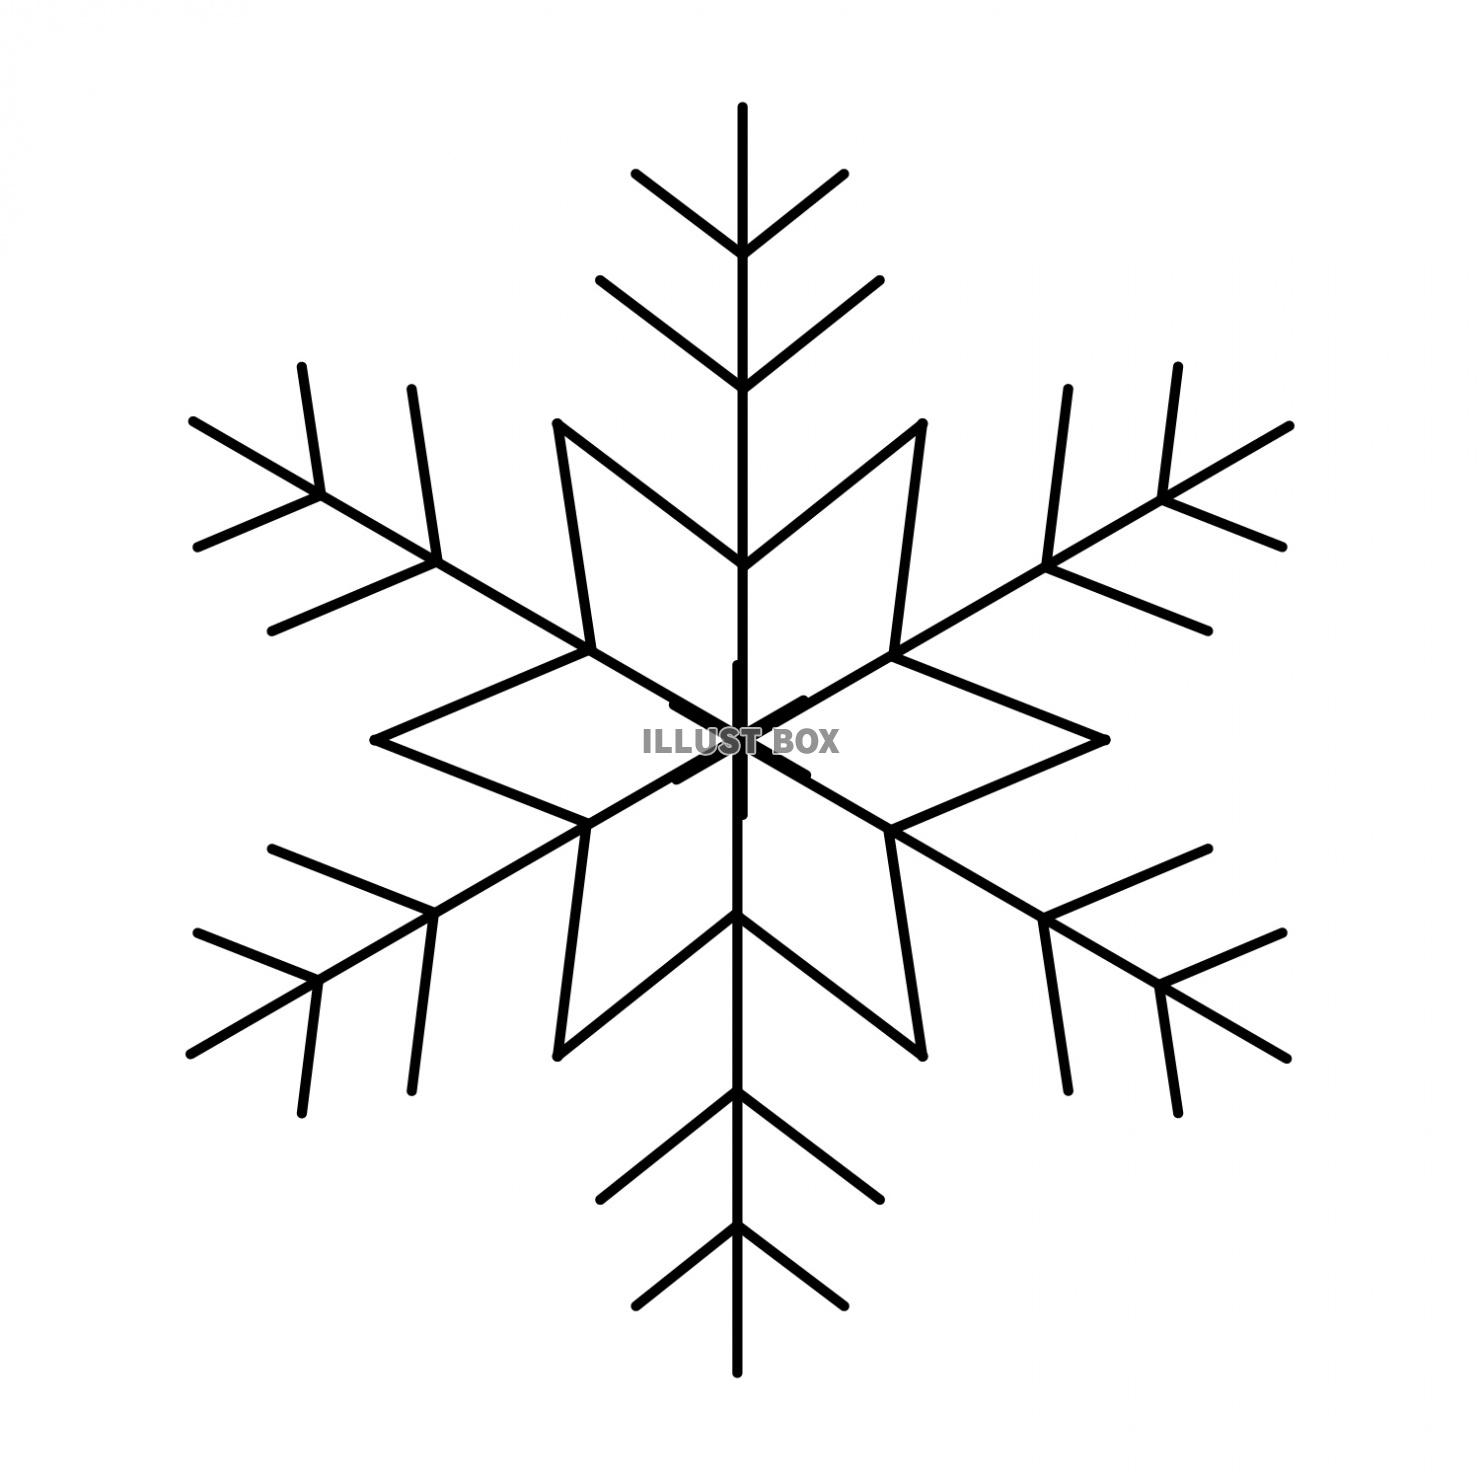 雪の結晶モチーフパーツ、シンプル線画01